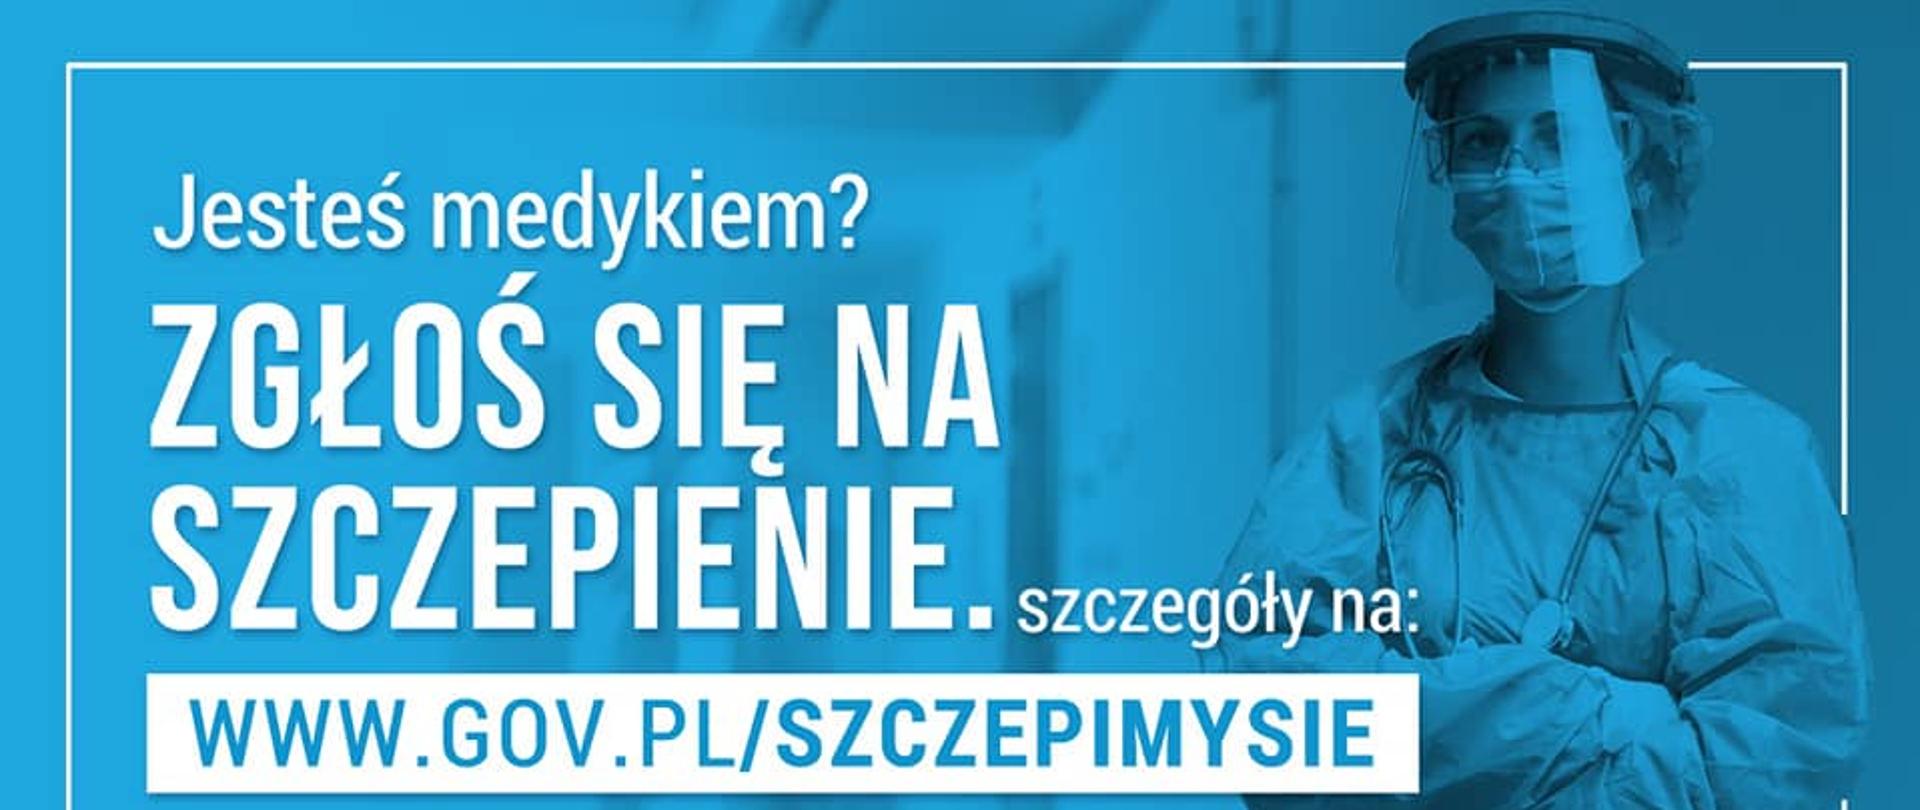 Jesteś medykiem? zgłoś się na szczepienie. szczegóły na: www.gov.pl/szczepimysie